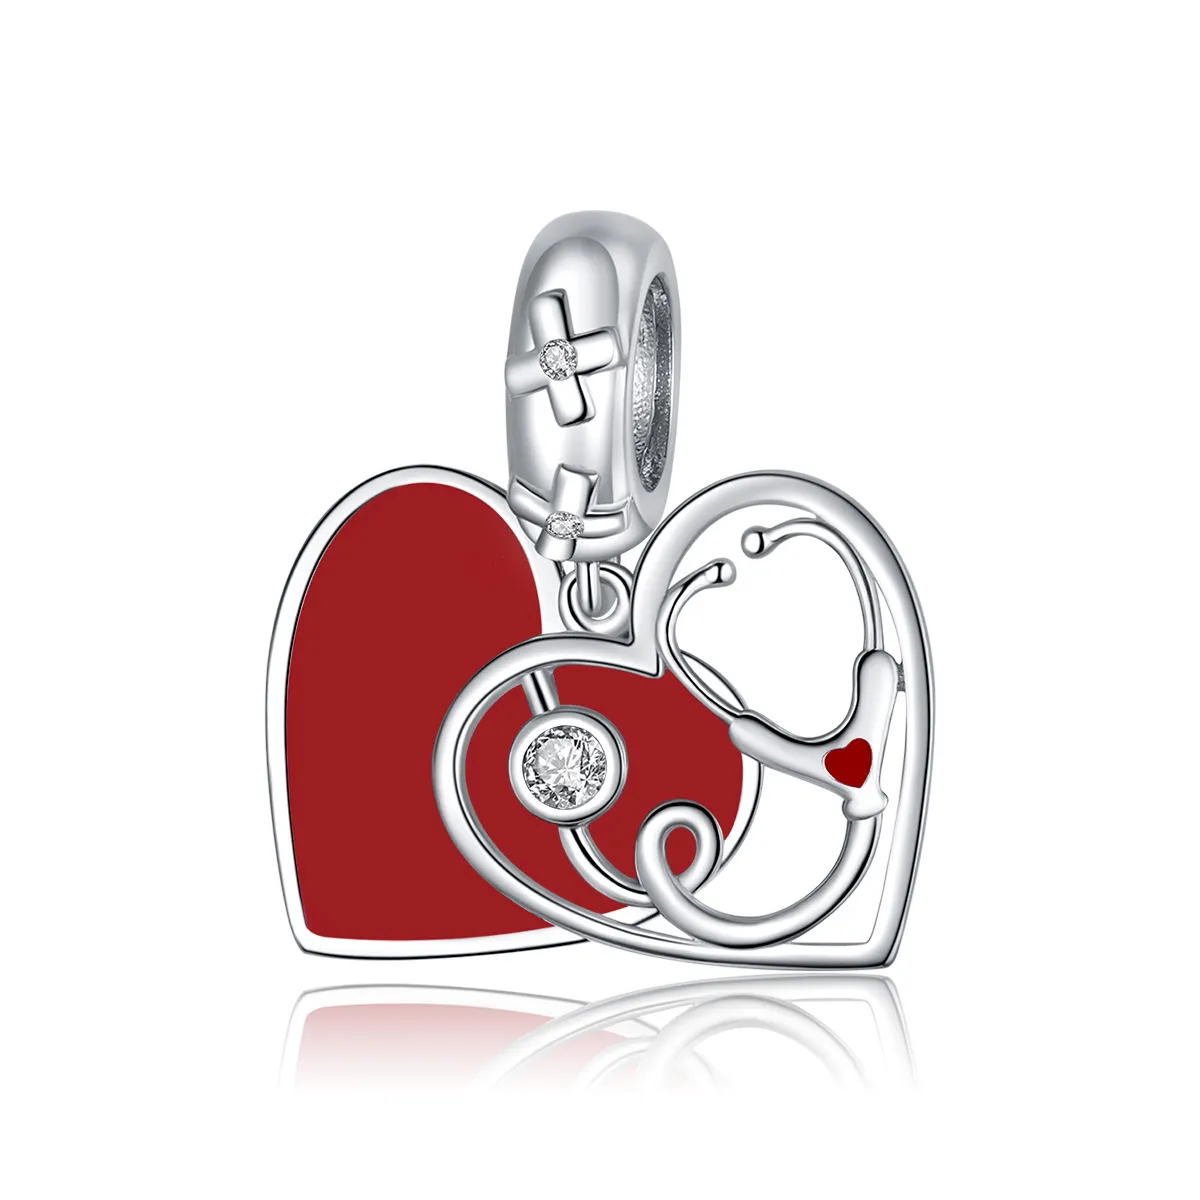 Talisman pandantiv Tip Pandora cu Stetoscop cu inimă roșie din argint - BSC308